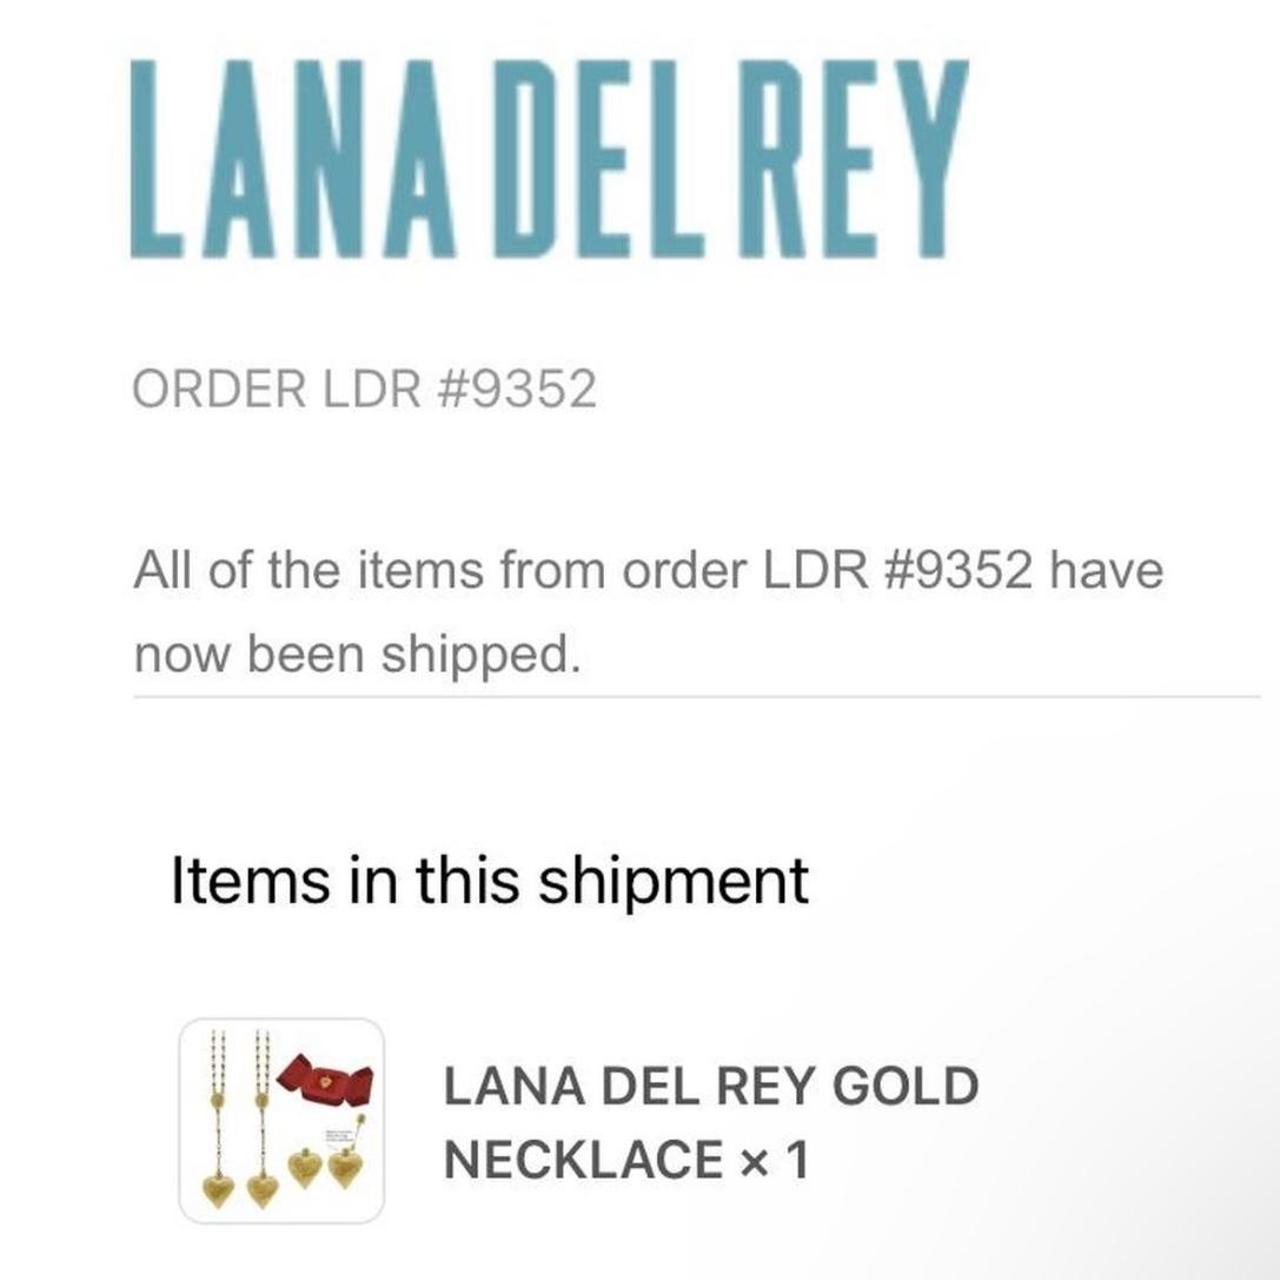 Lana Del Rey coke necklace - Authentic : r/lanadelrey